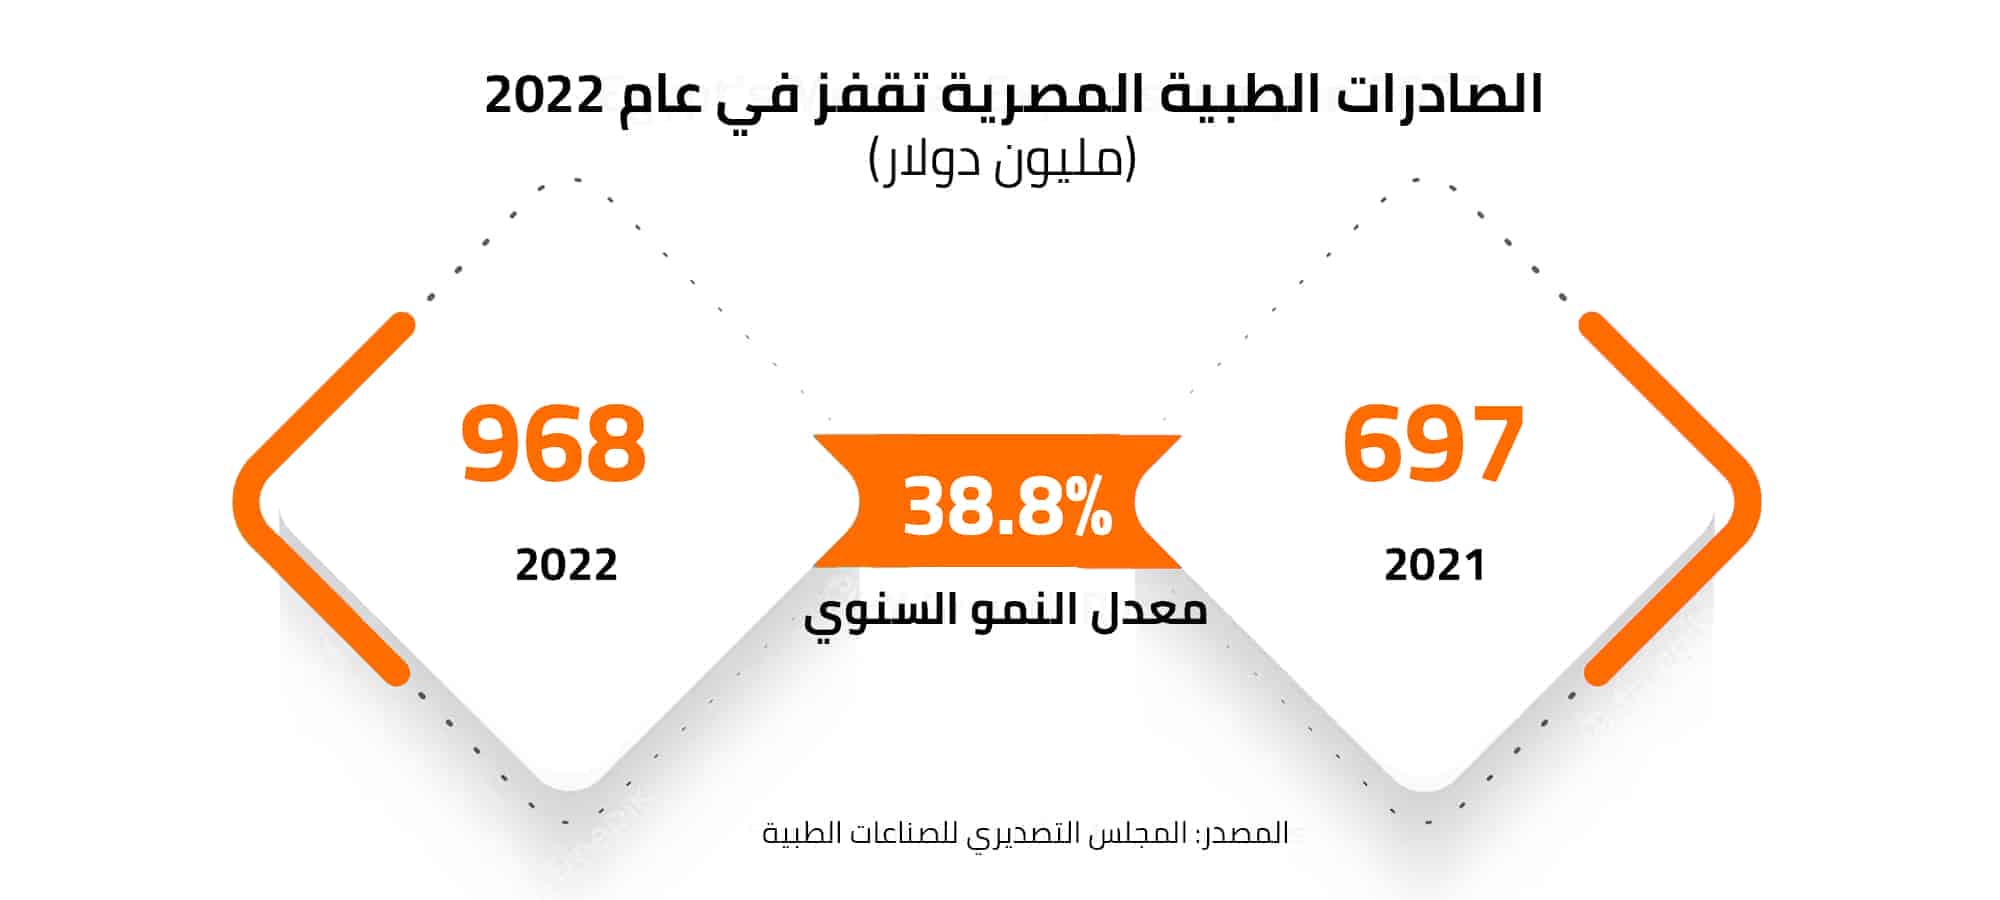 الصادرات الطبية المصرية تقفز في عام 2022